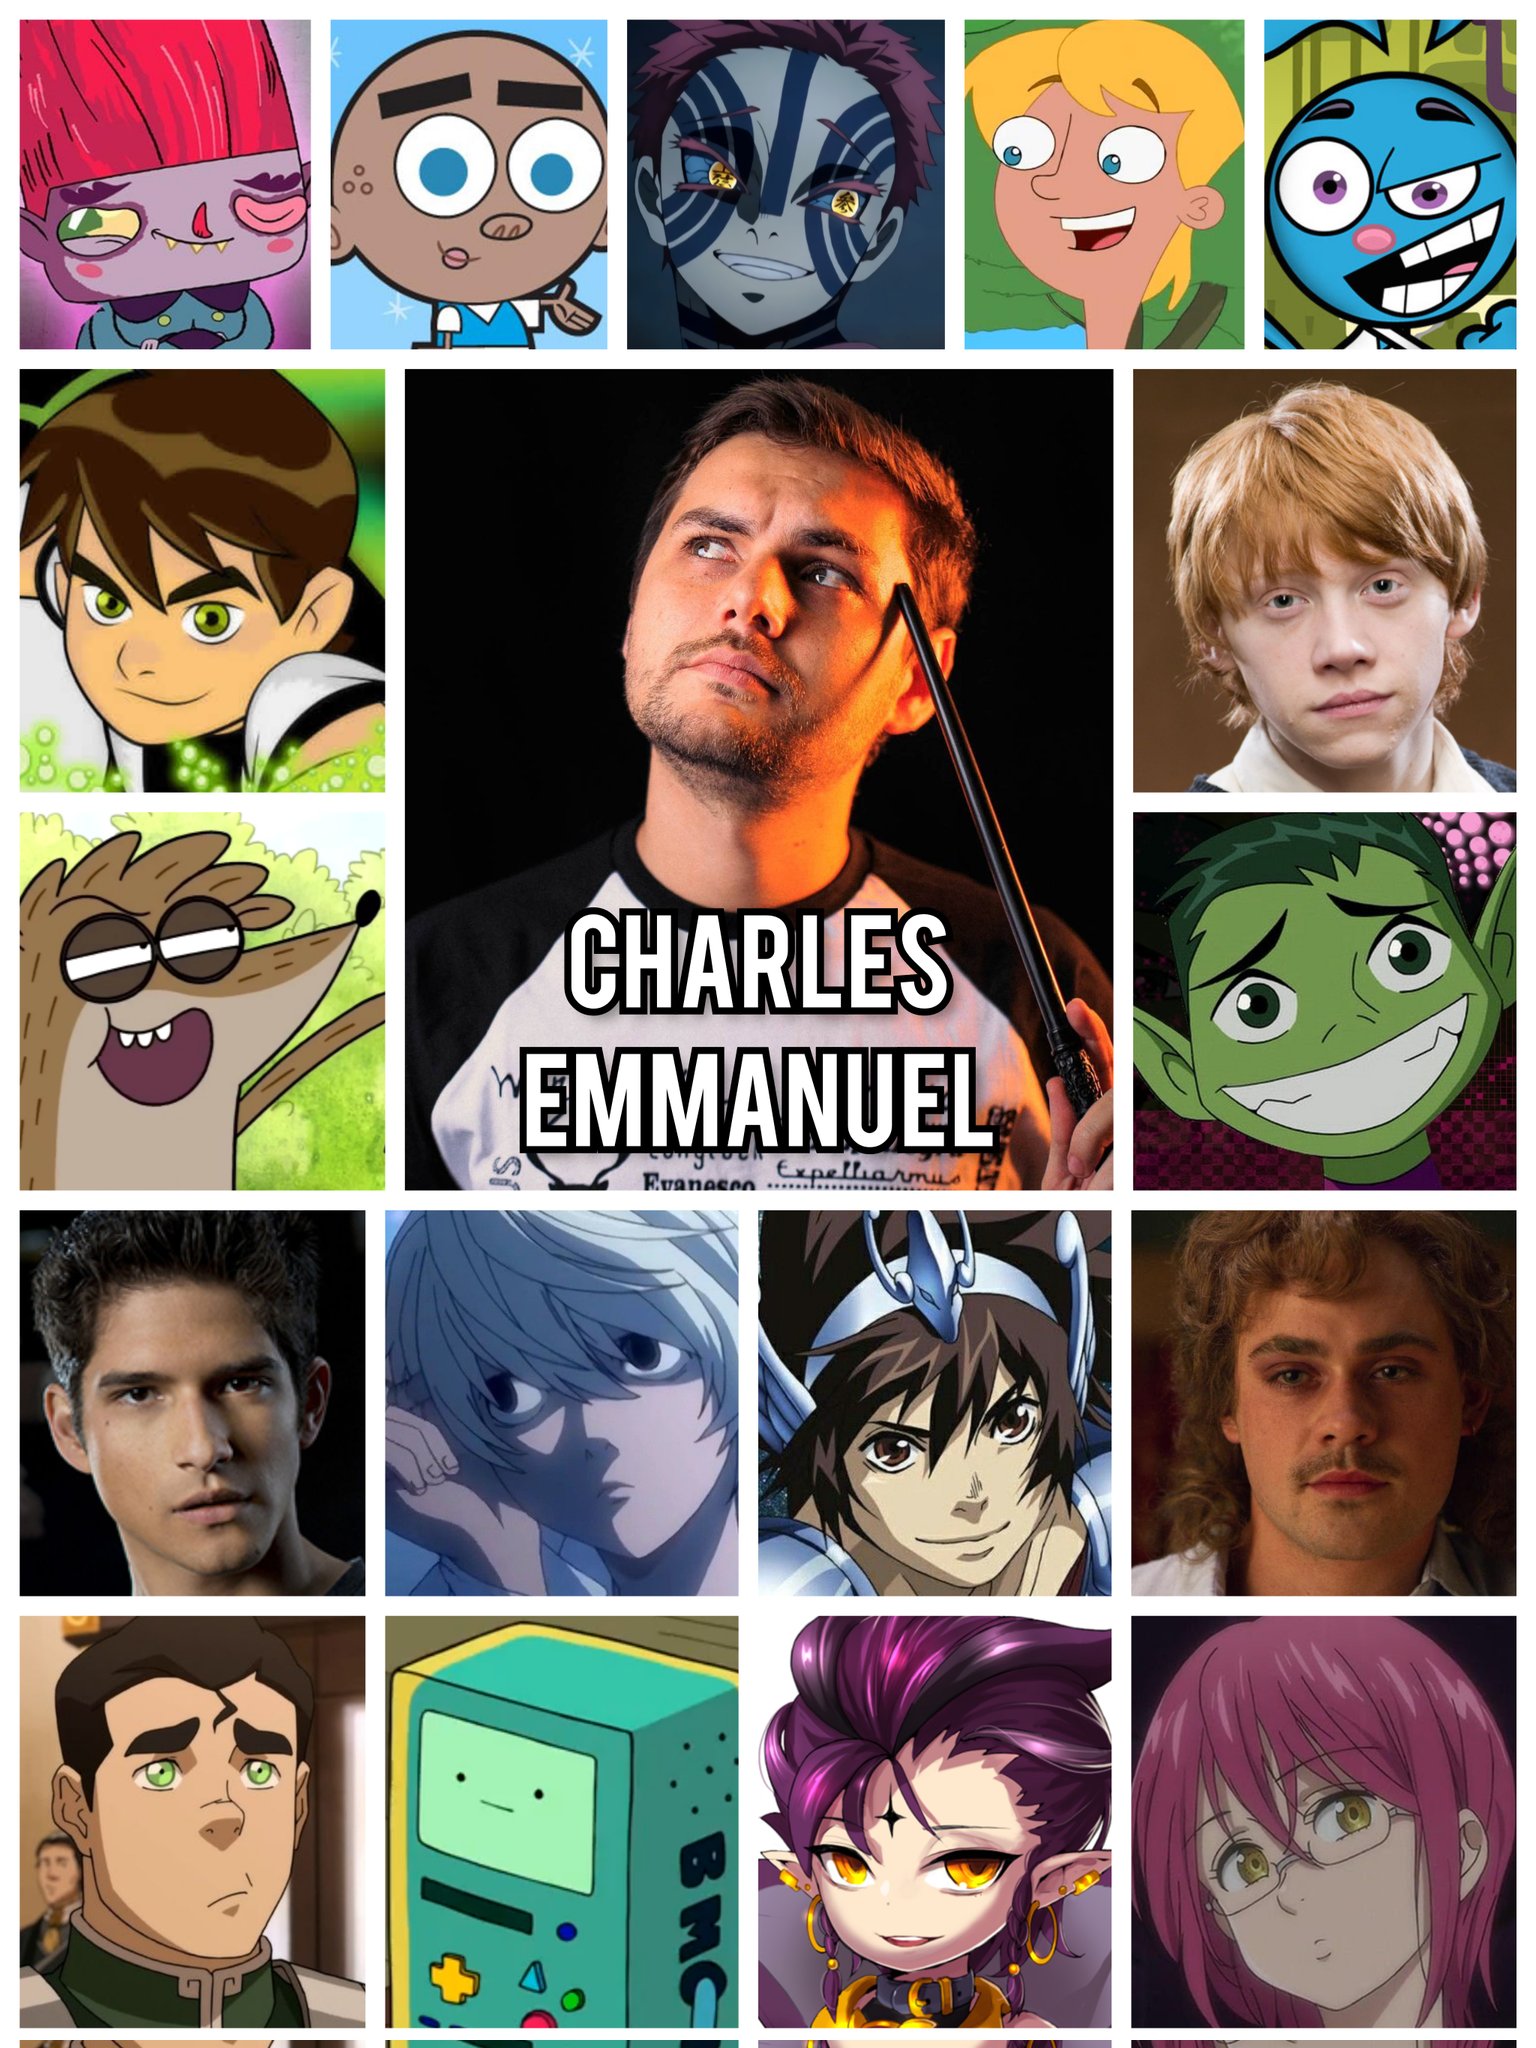 Personagens Com os Mesmos Dubladores! on X: Finalmente Charles Emmanuel  tem um protagonista de anime após tanto tempo! mas a que custo? LKKKK  Zoas, tô curioso pela dublagem agora! / X